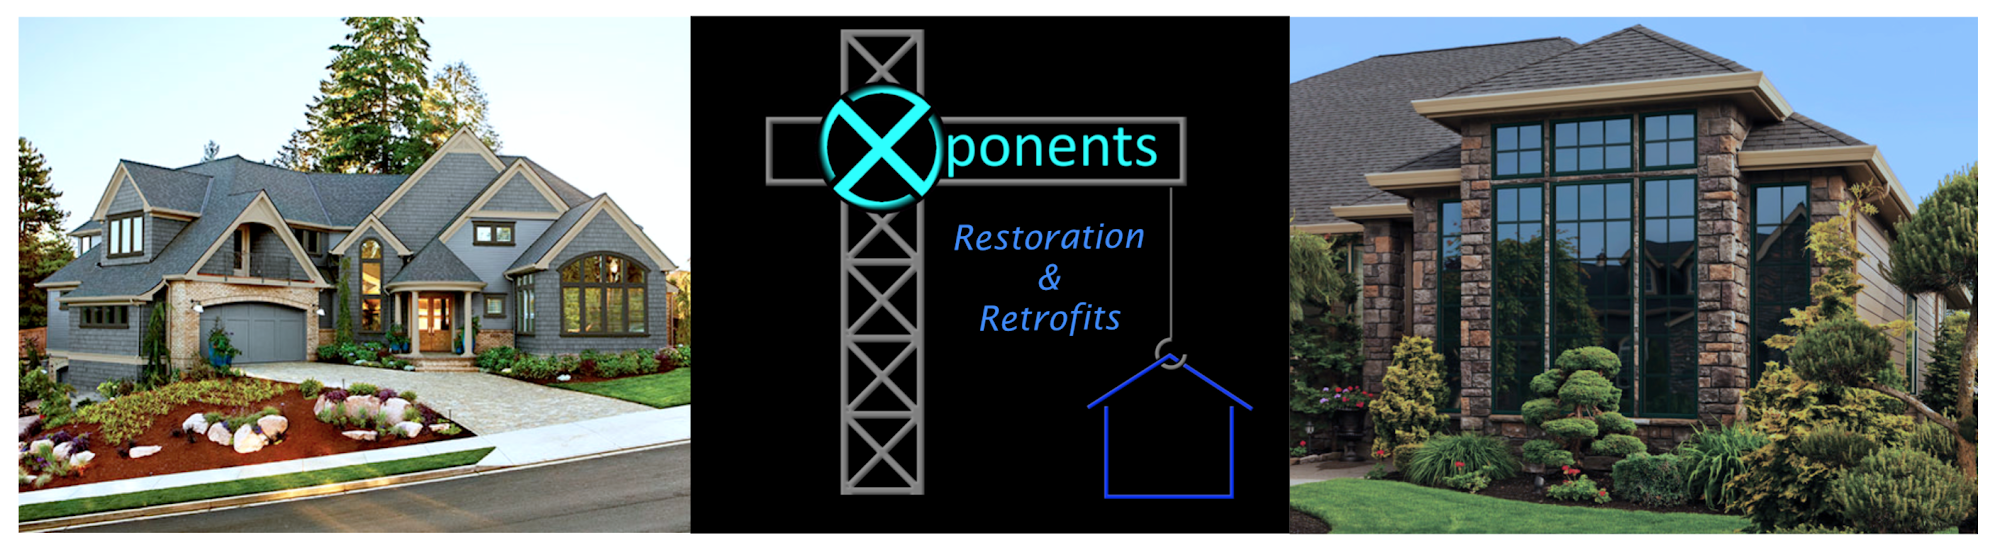 Xponents Restoration & Retrofits